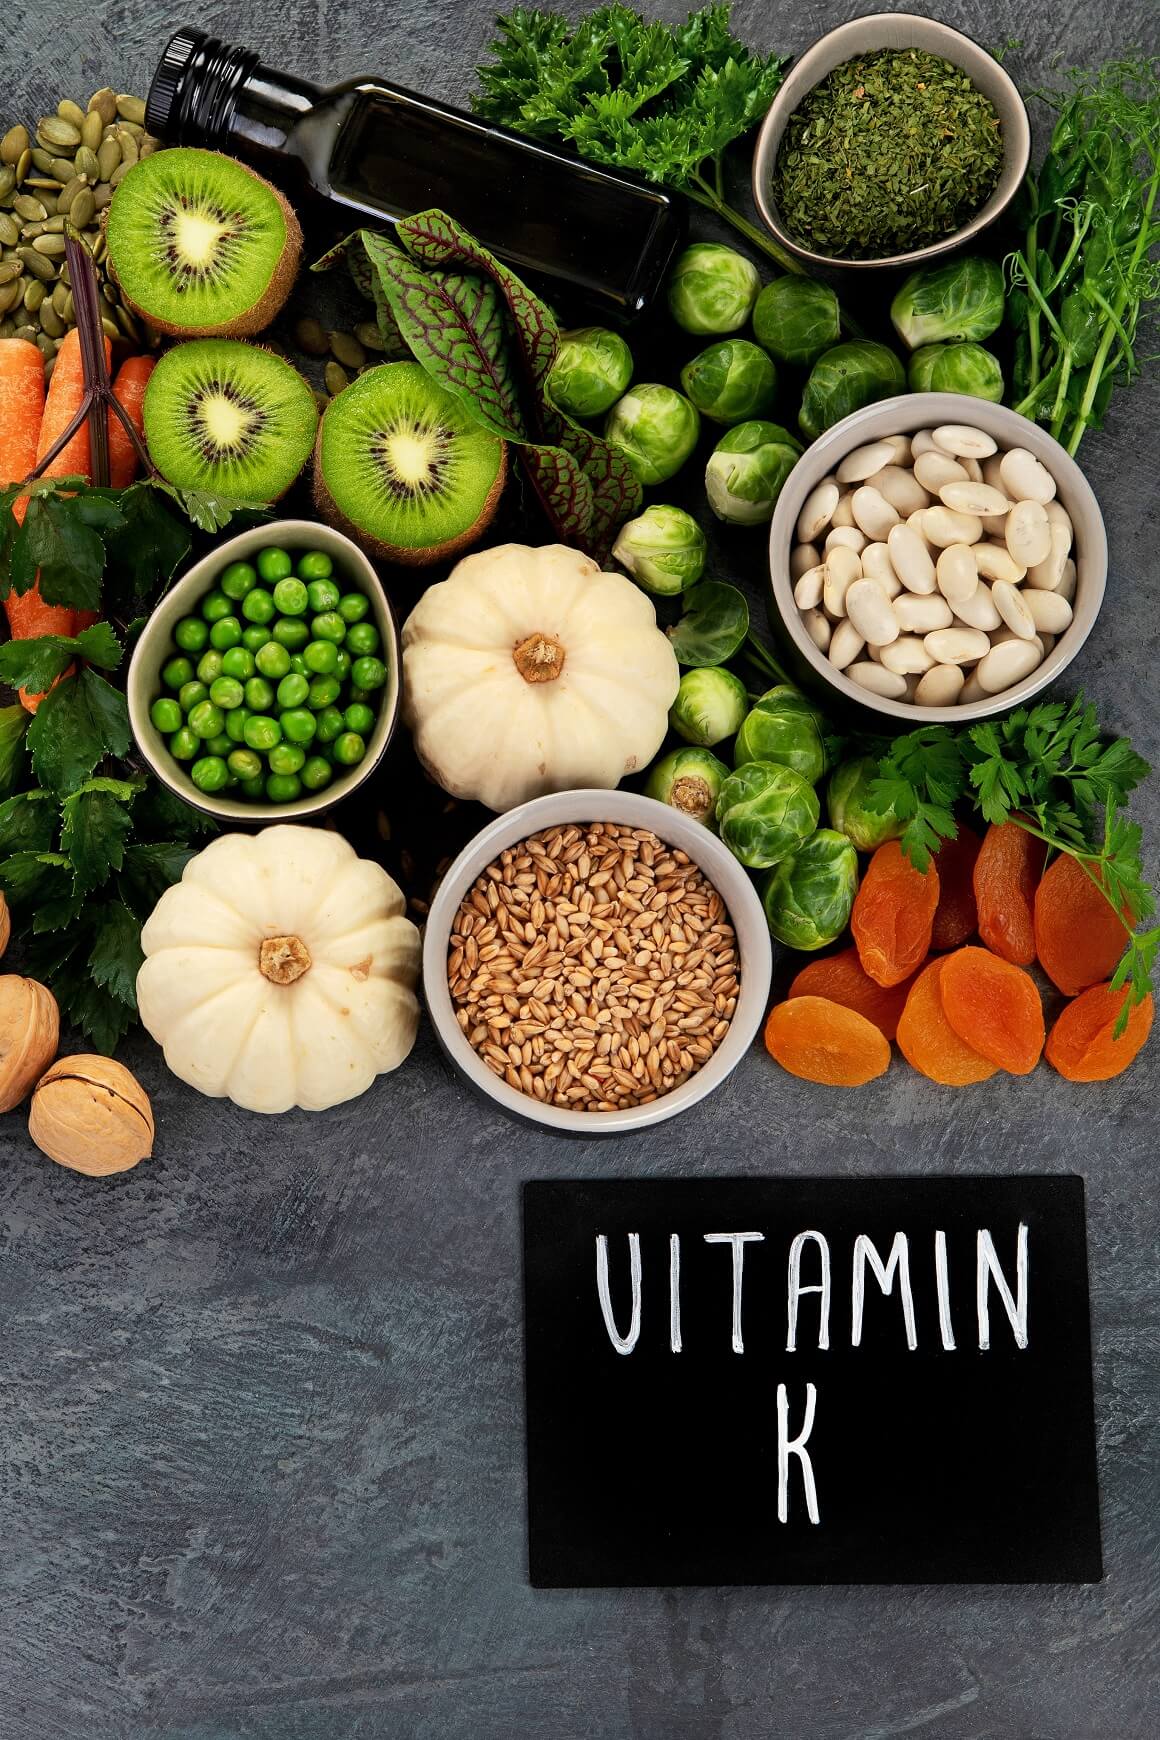 Putem prehrane moramo nadomjestiti preostalu potrebnu količinu vitamina K koji sudjeluje u metabolizmu kostiju